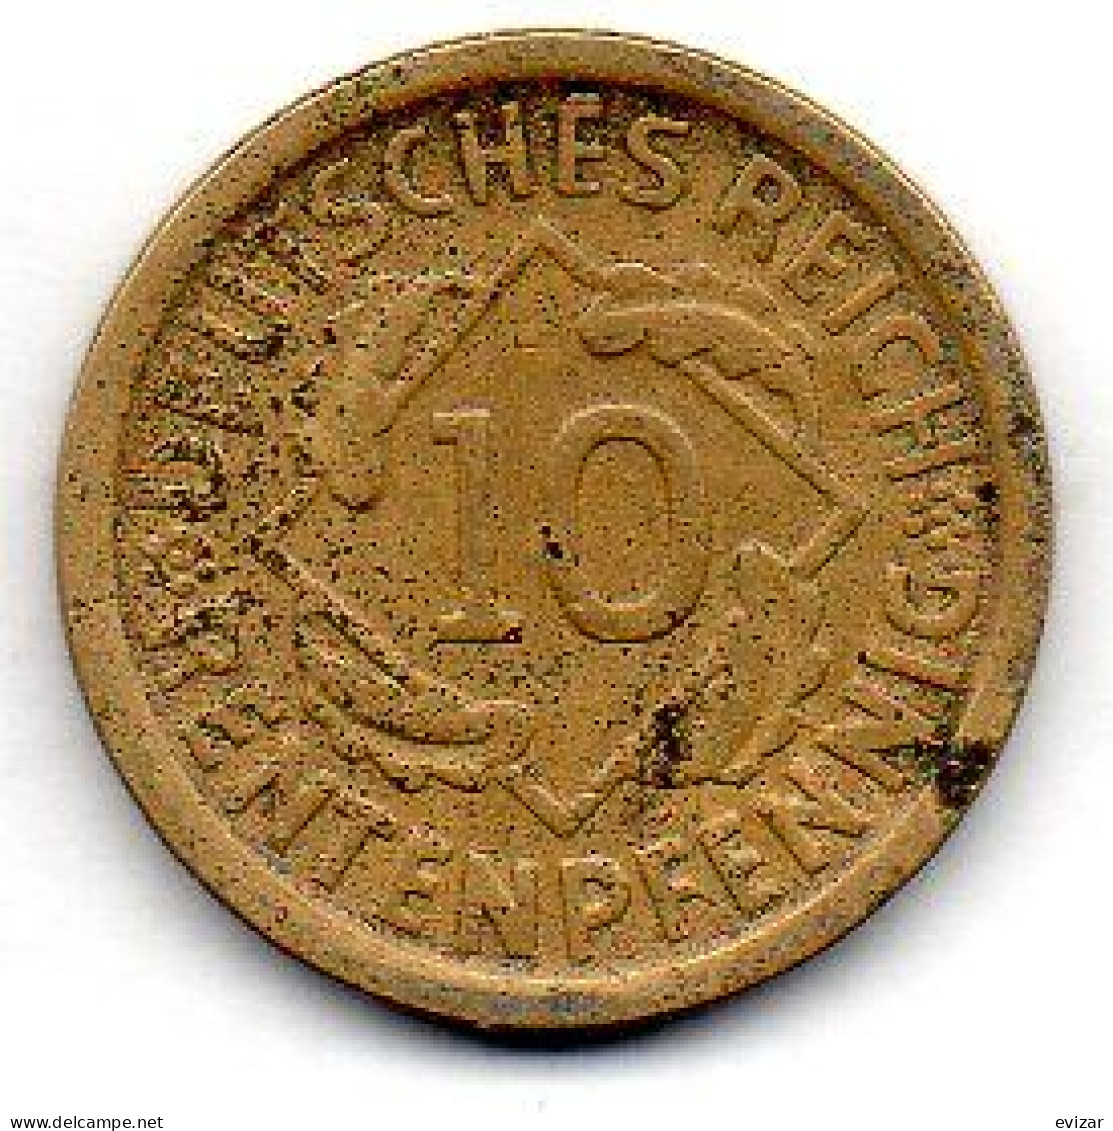 GERMANY - WEIMAR REPUBLIC, 10 Renten Pfennig, Aluminum-Bronze, Year 1924-D, KM # 33 - 10 Rentenpfennig & 10 Reichspfennig